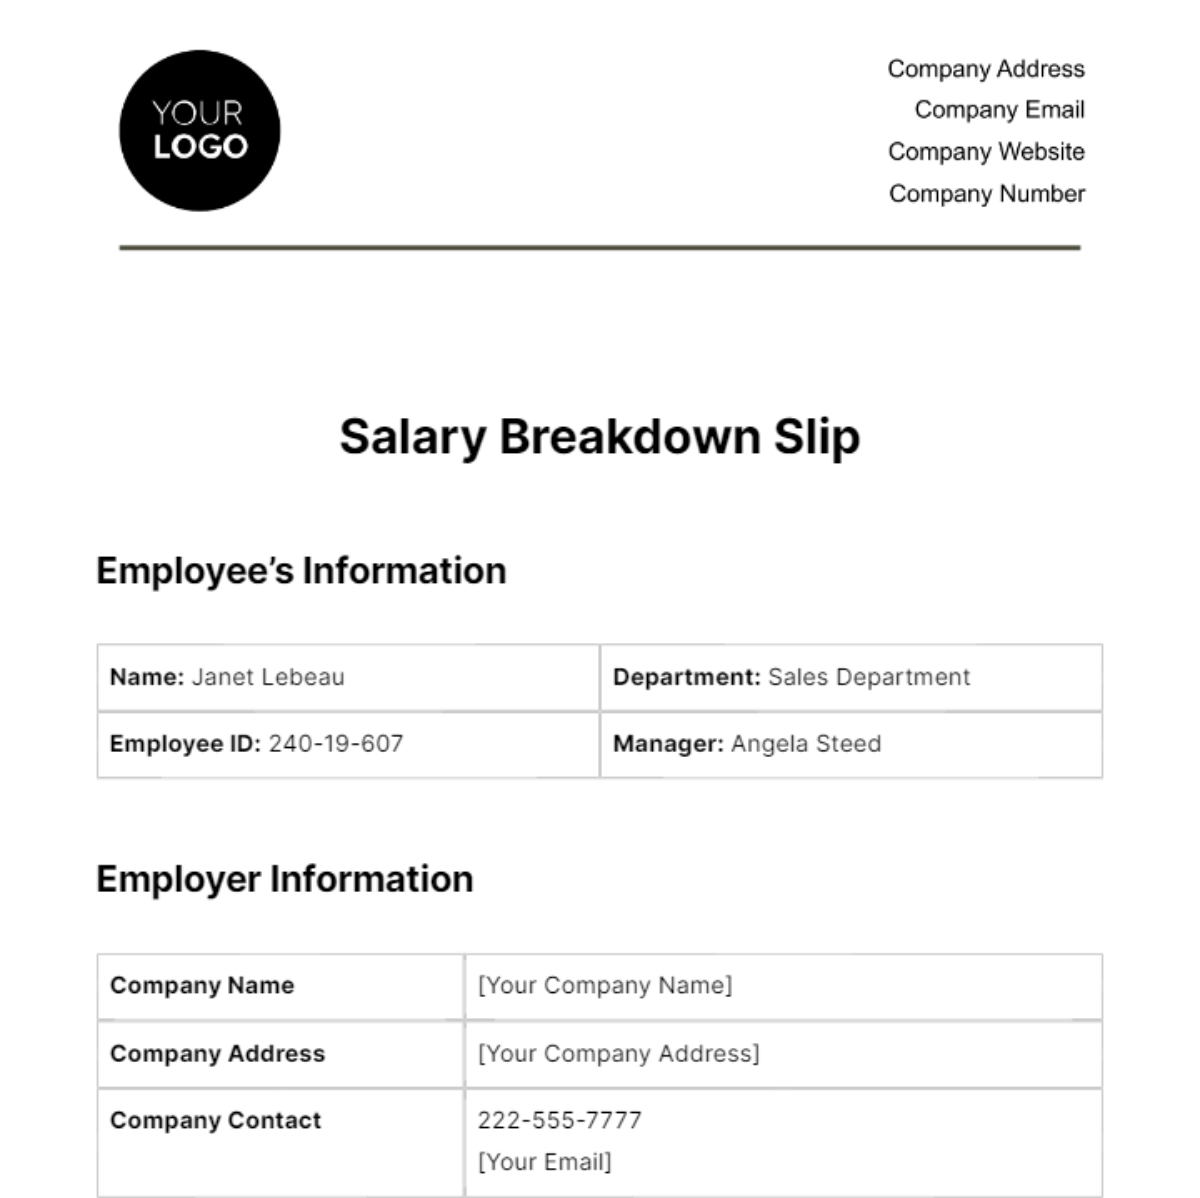 Salary Breakdown Slip HR Template